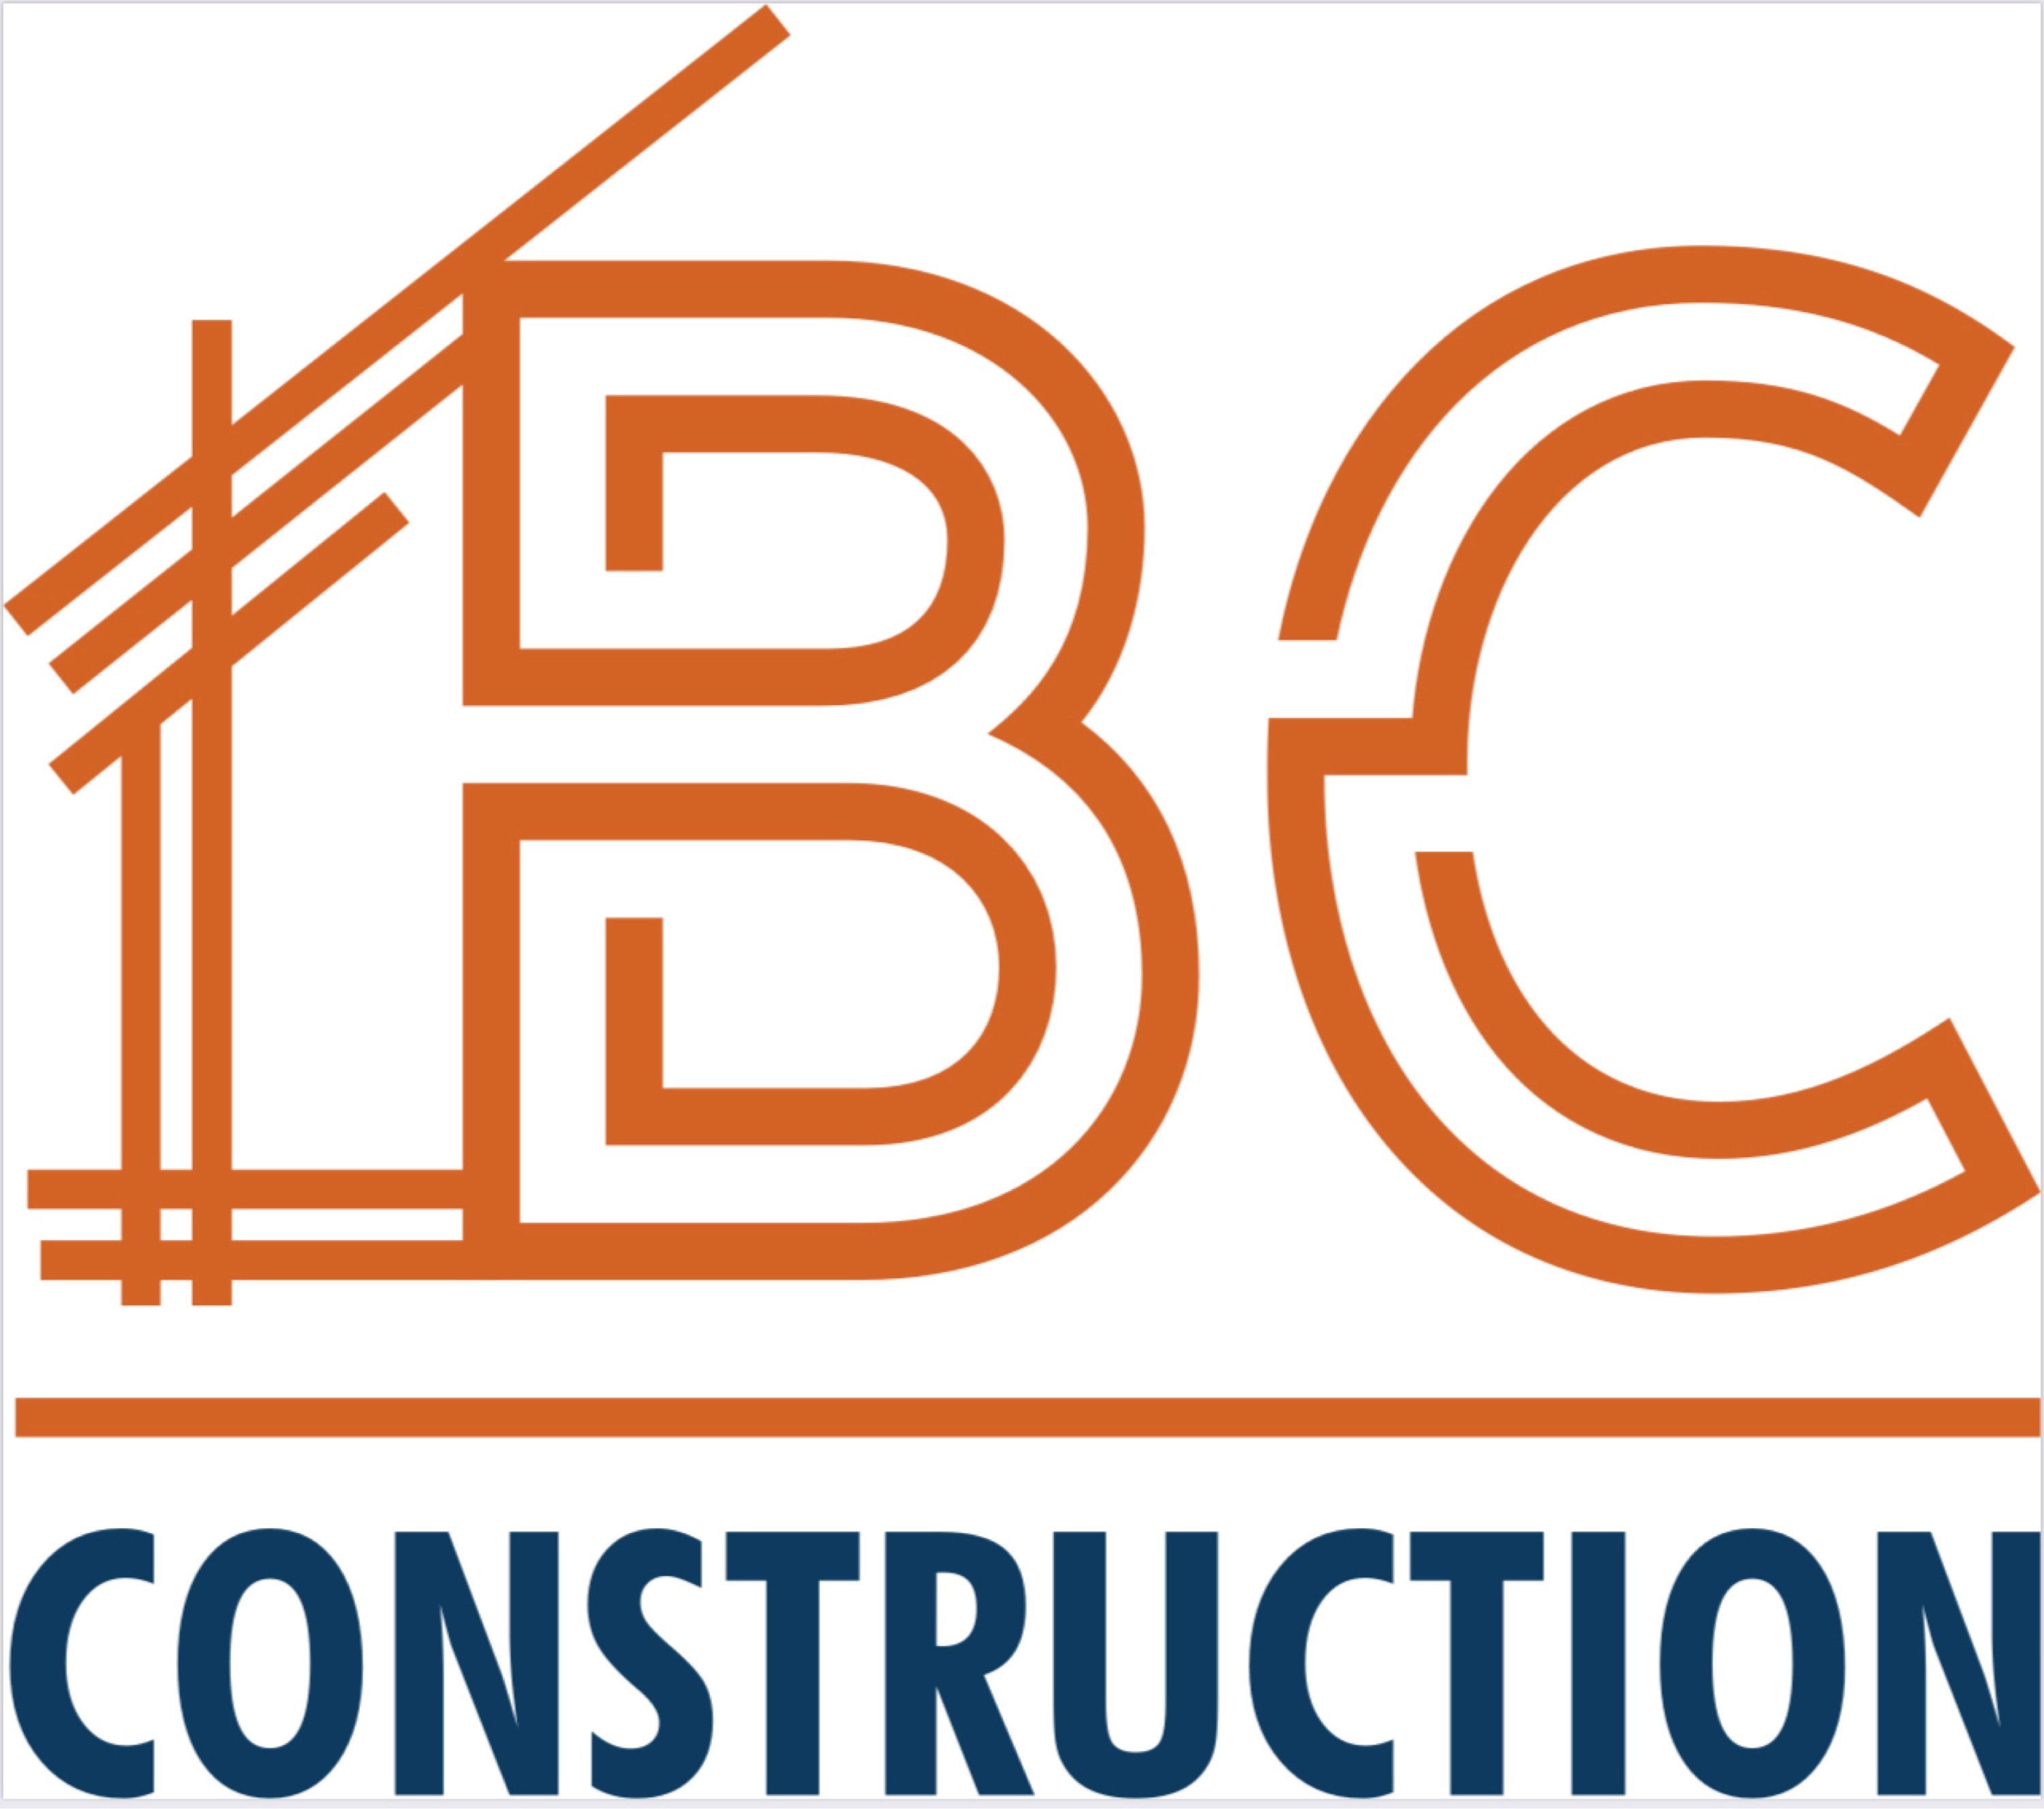 Brandon Crisp Handyman Services-Unlicensed Contractor Logo